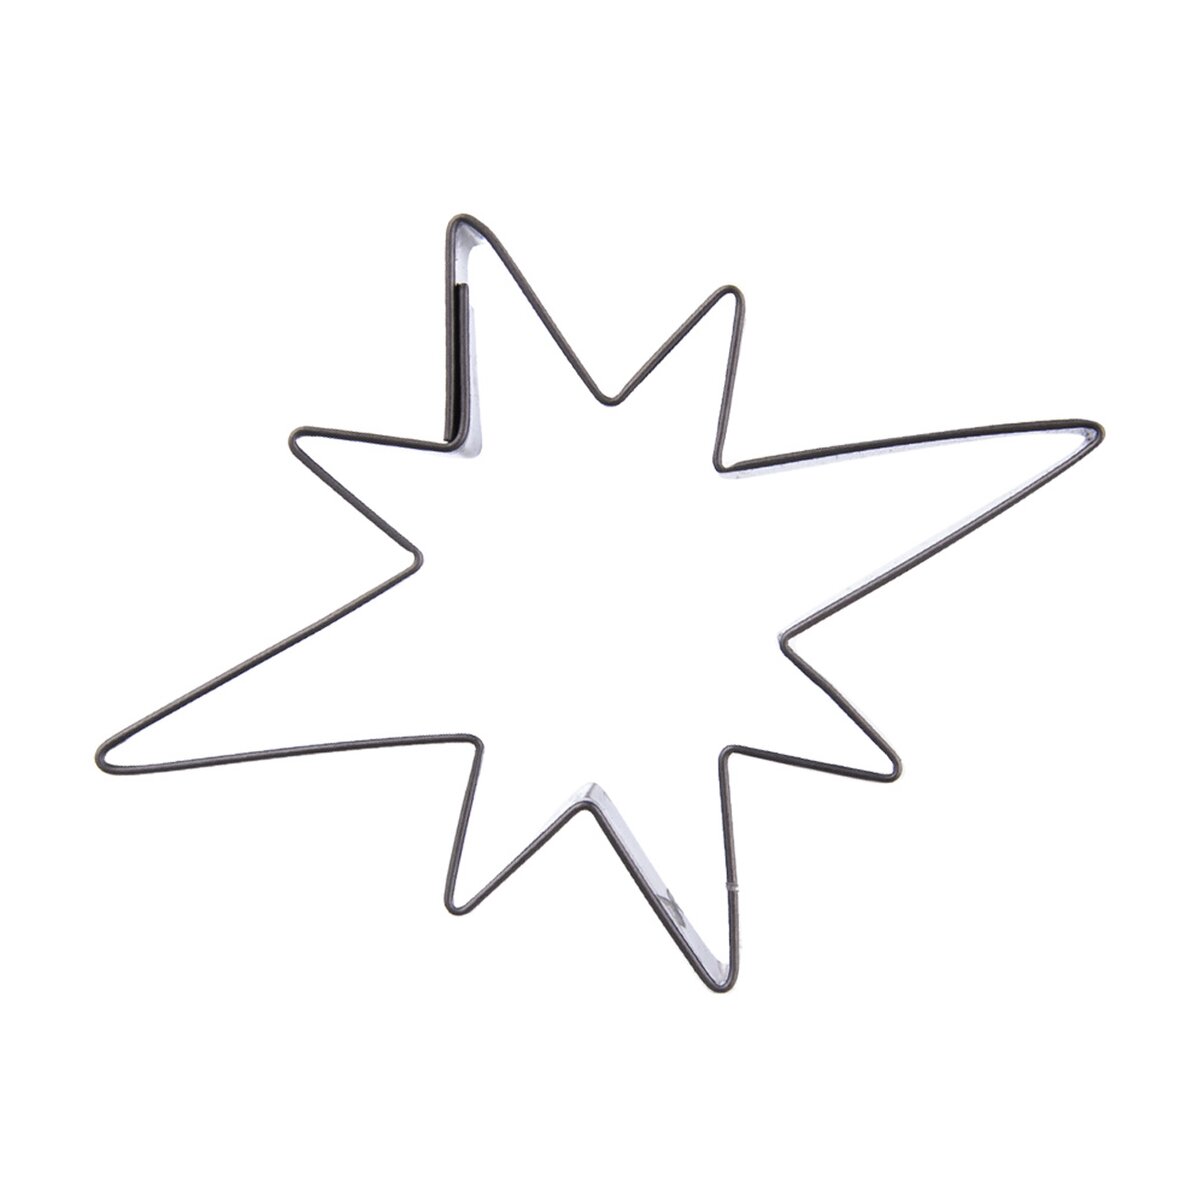 Vykrajovačka hvězda (akční sada 5 ks)